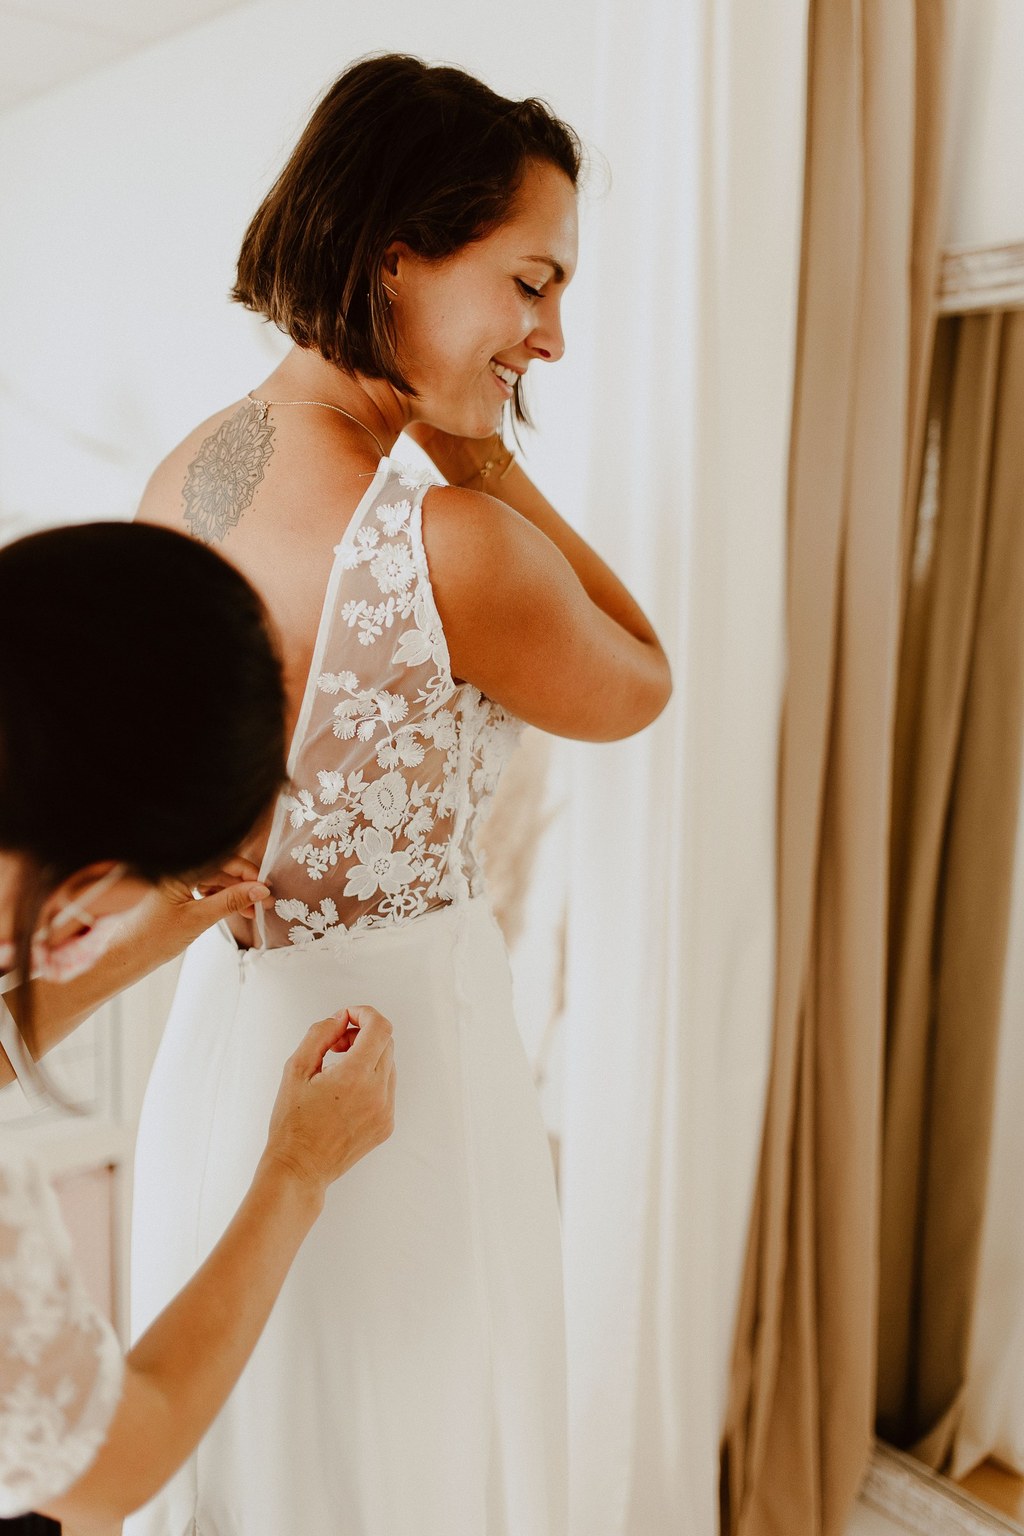 Comment se passent les essayage de robe de mariée sur mesure ?